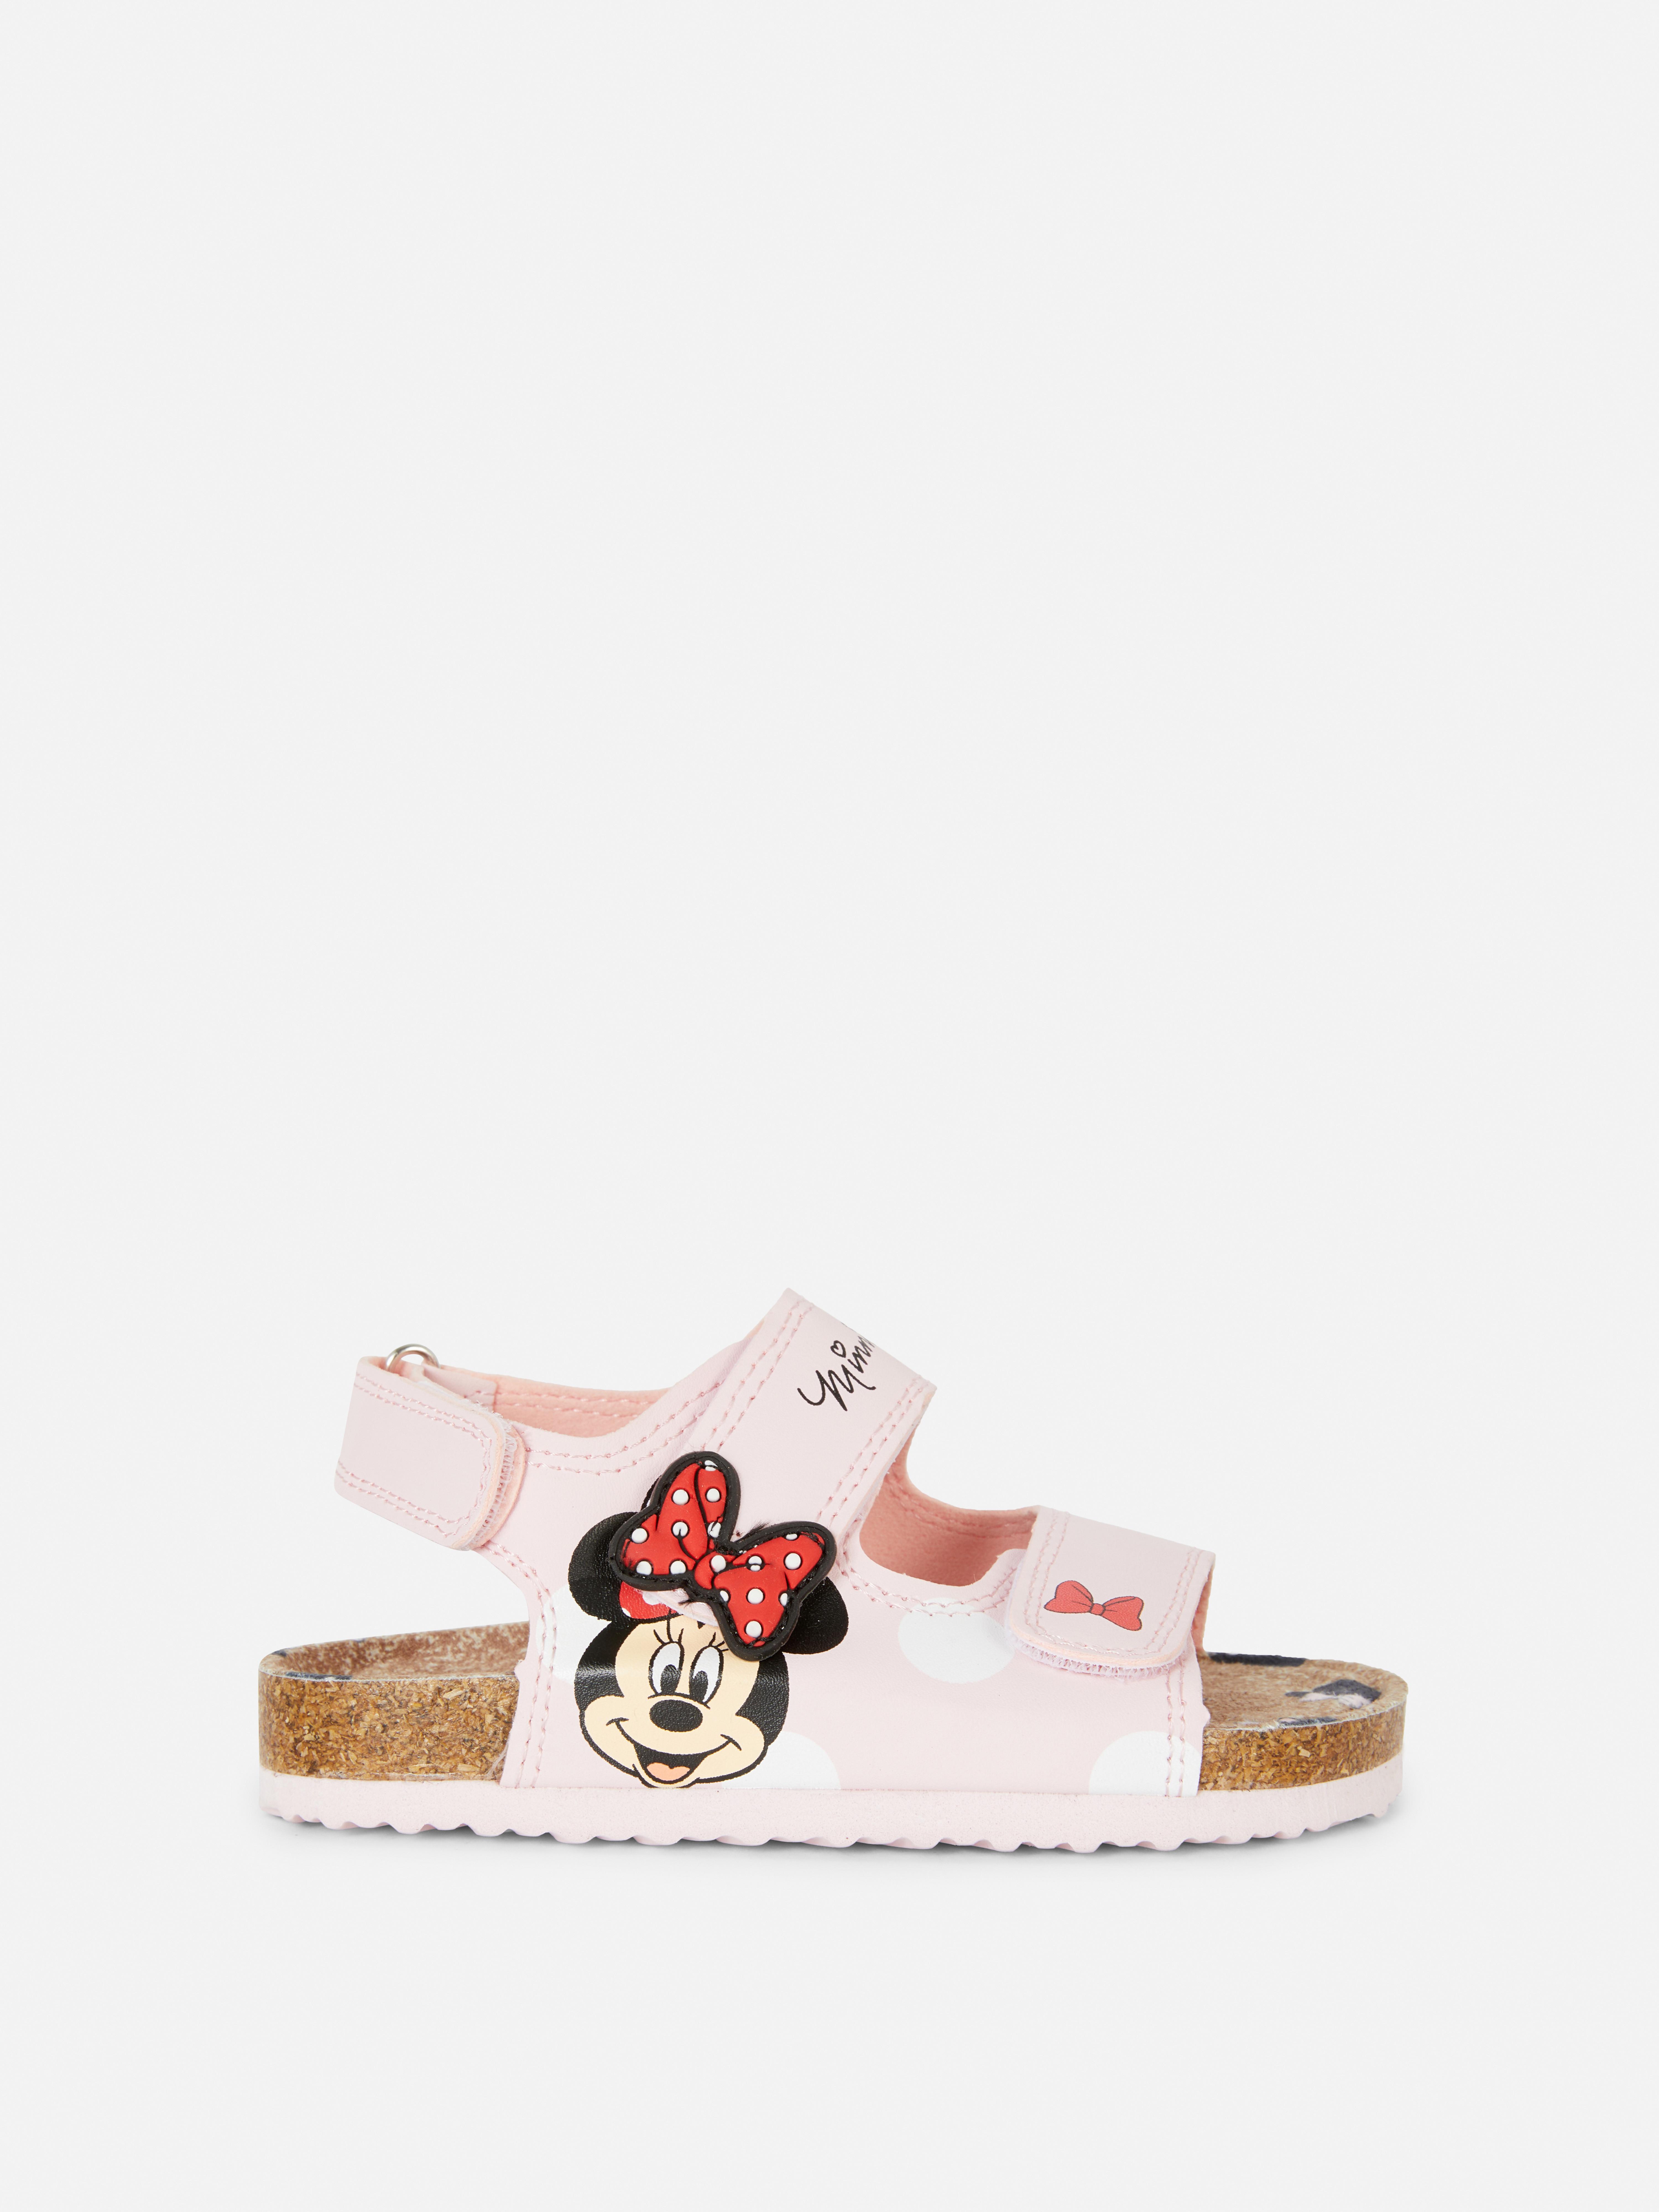 Disney’s Minnie Mouse Sandals